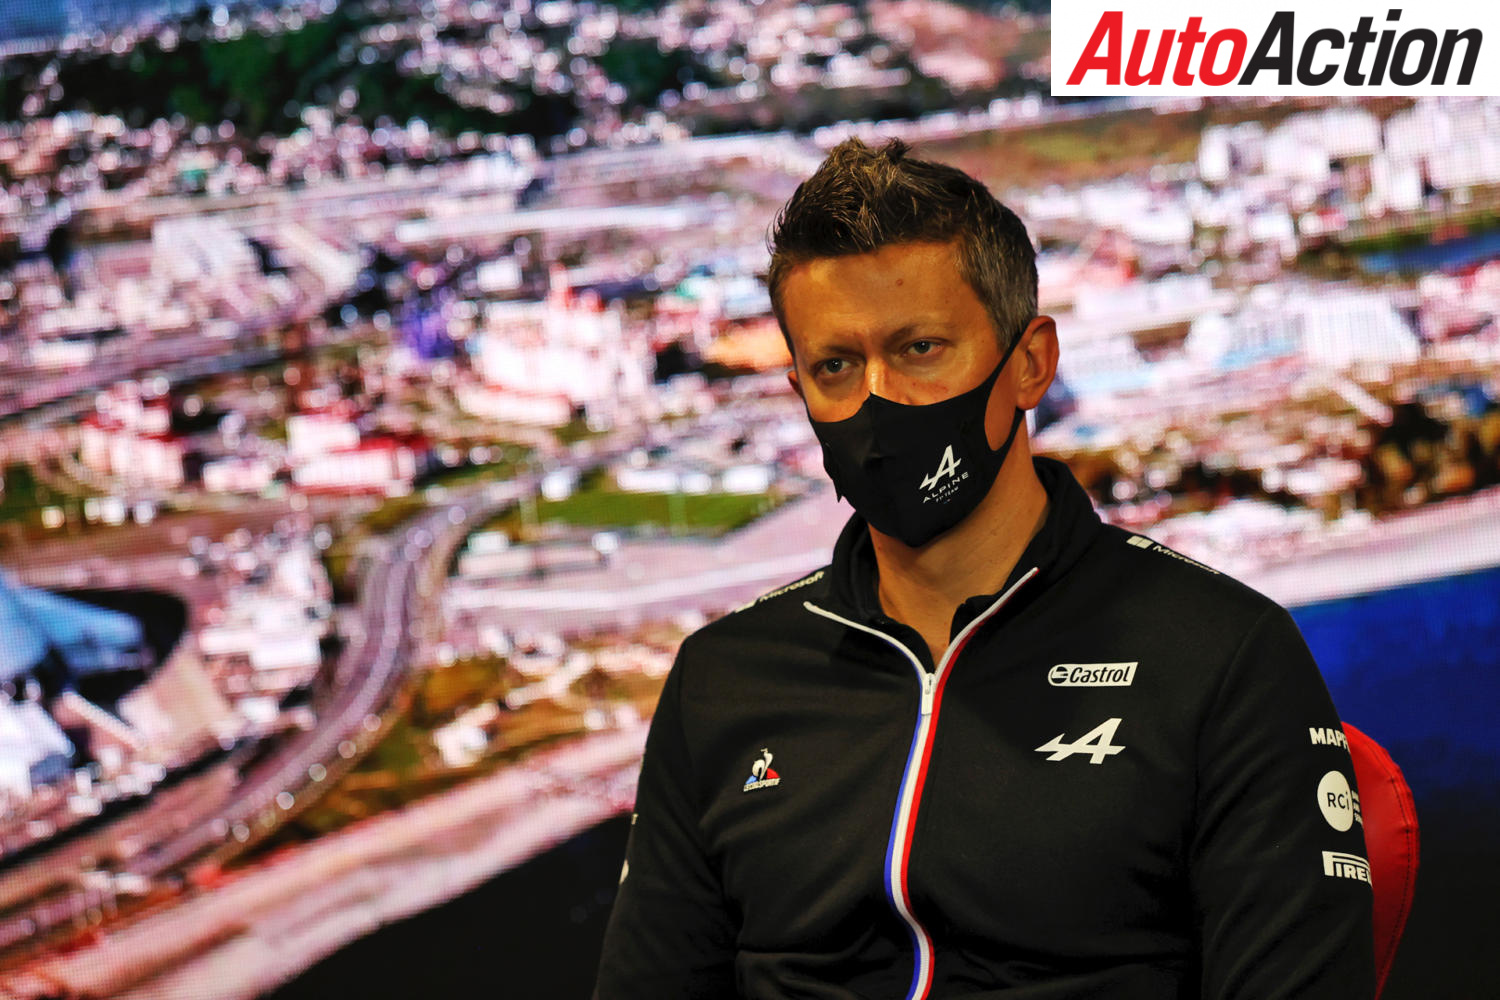 Marcin Budkowski departs Alpine F1 team - Image: Motorsport Images